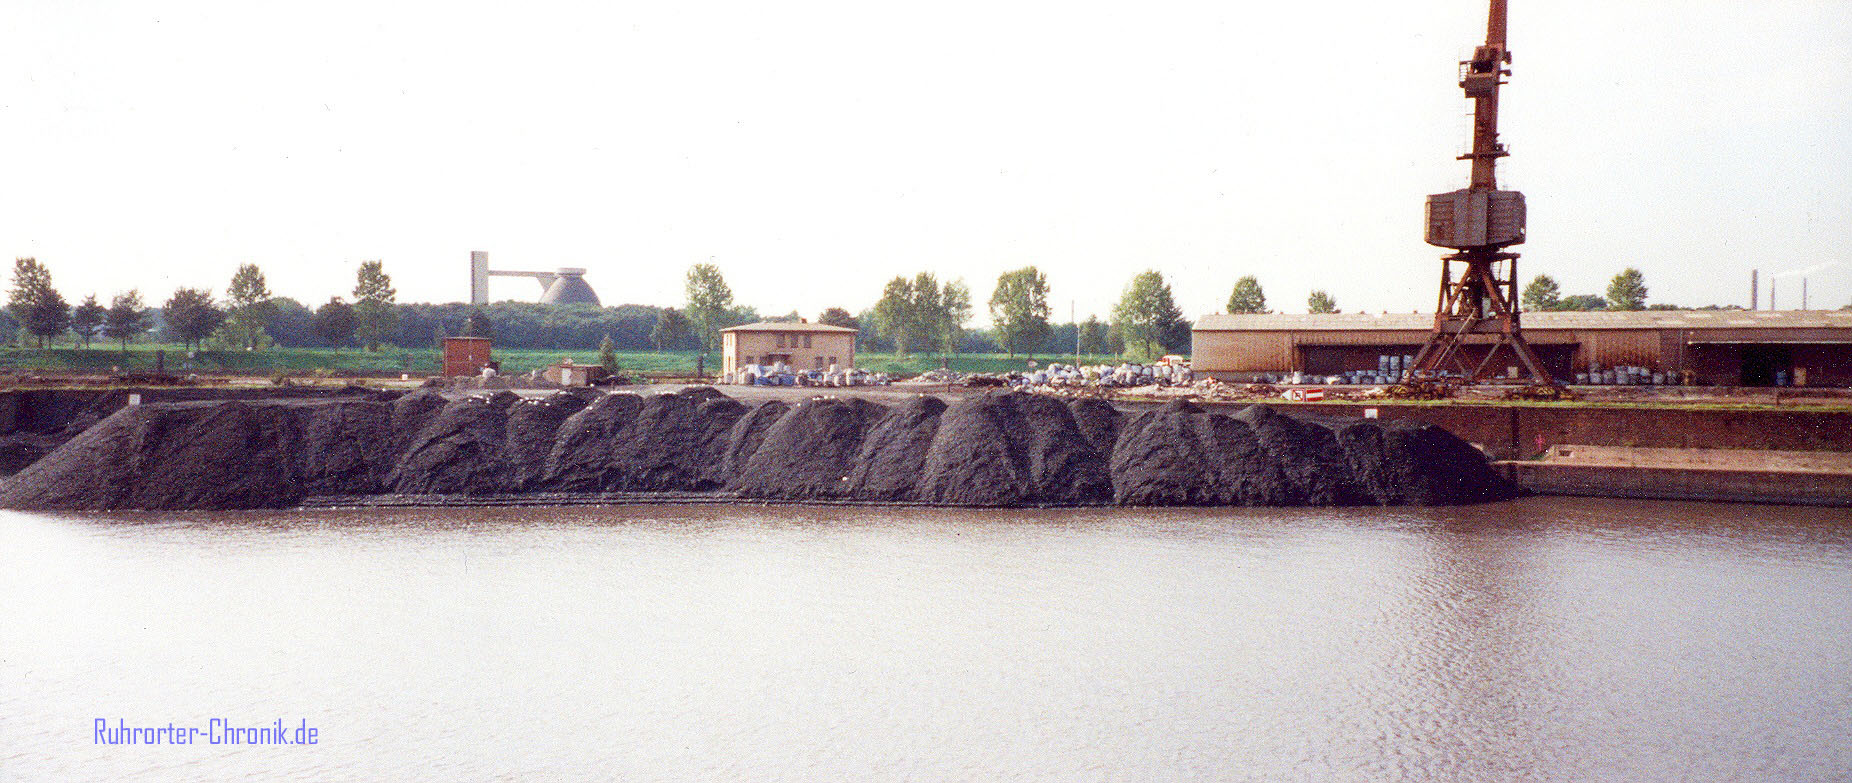 Kaiserhafen : Zeitraum: 1991-2005